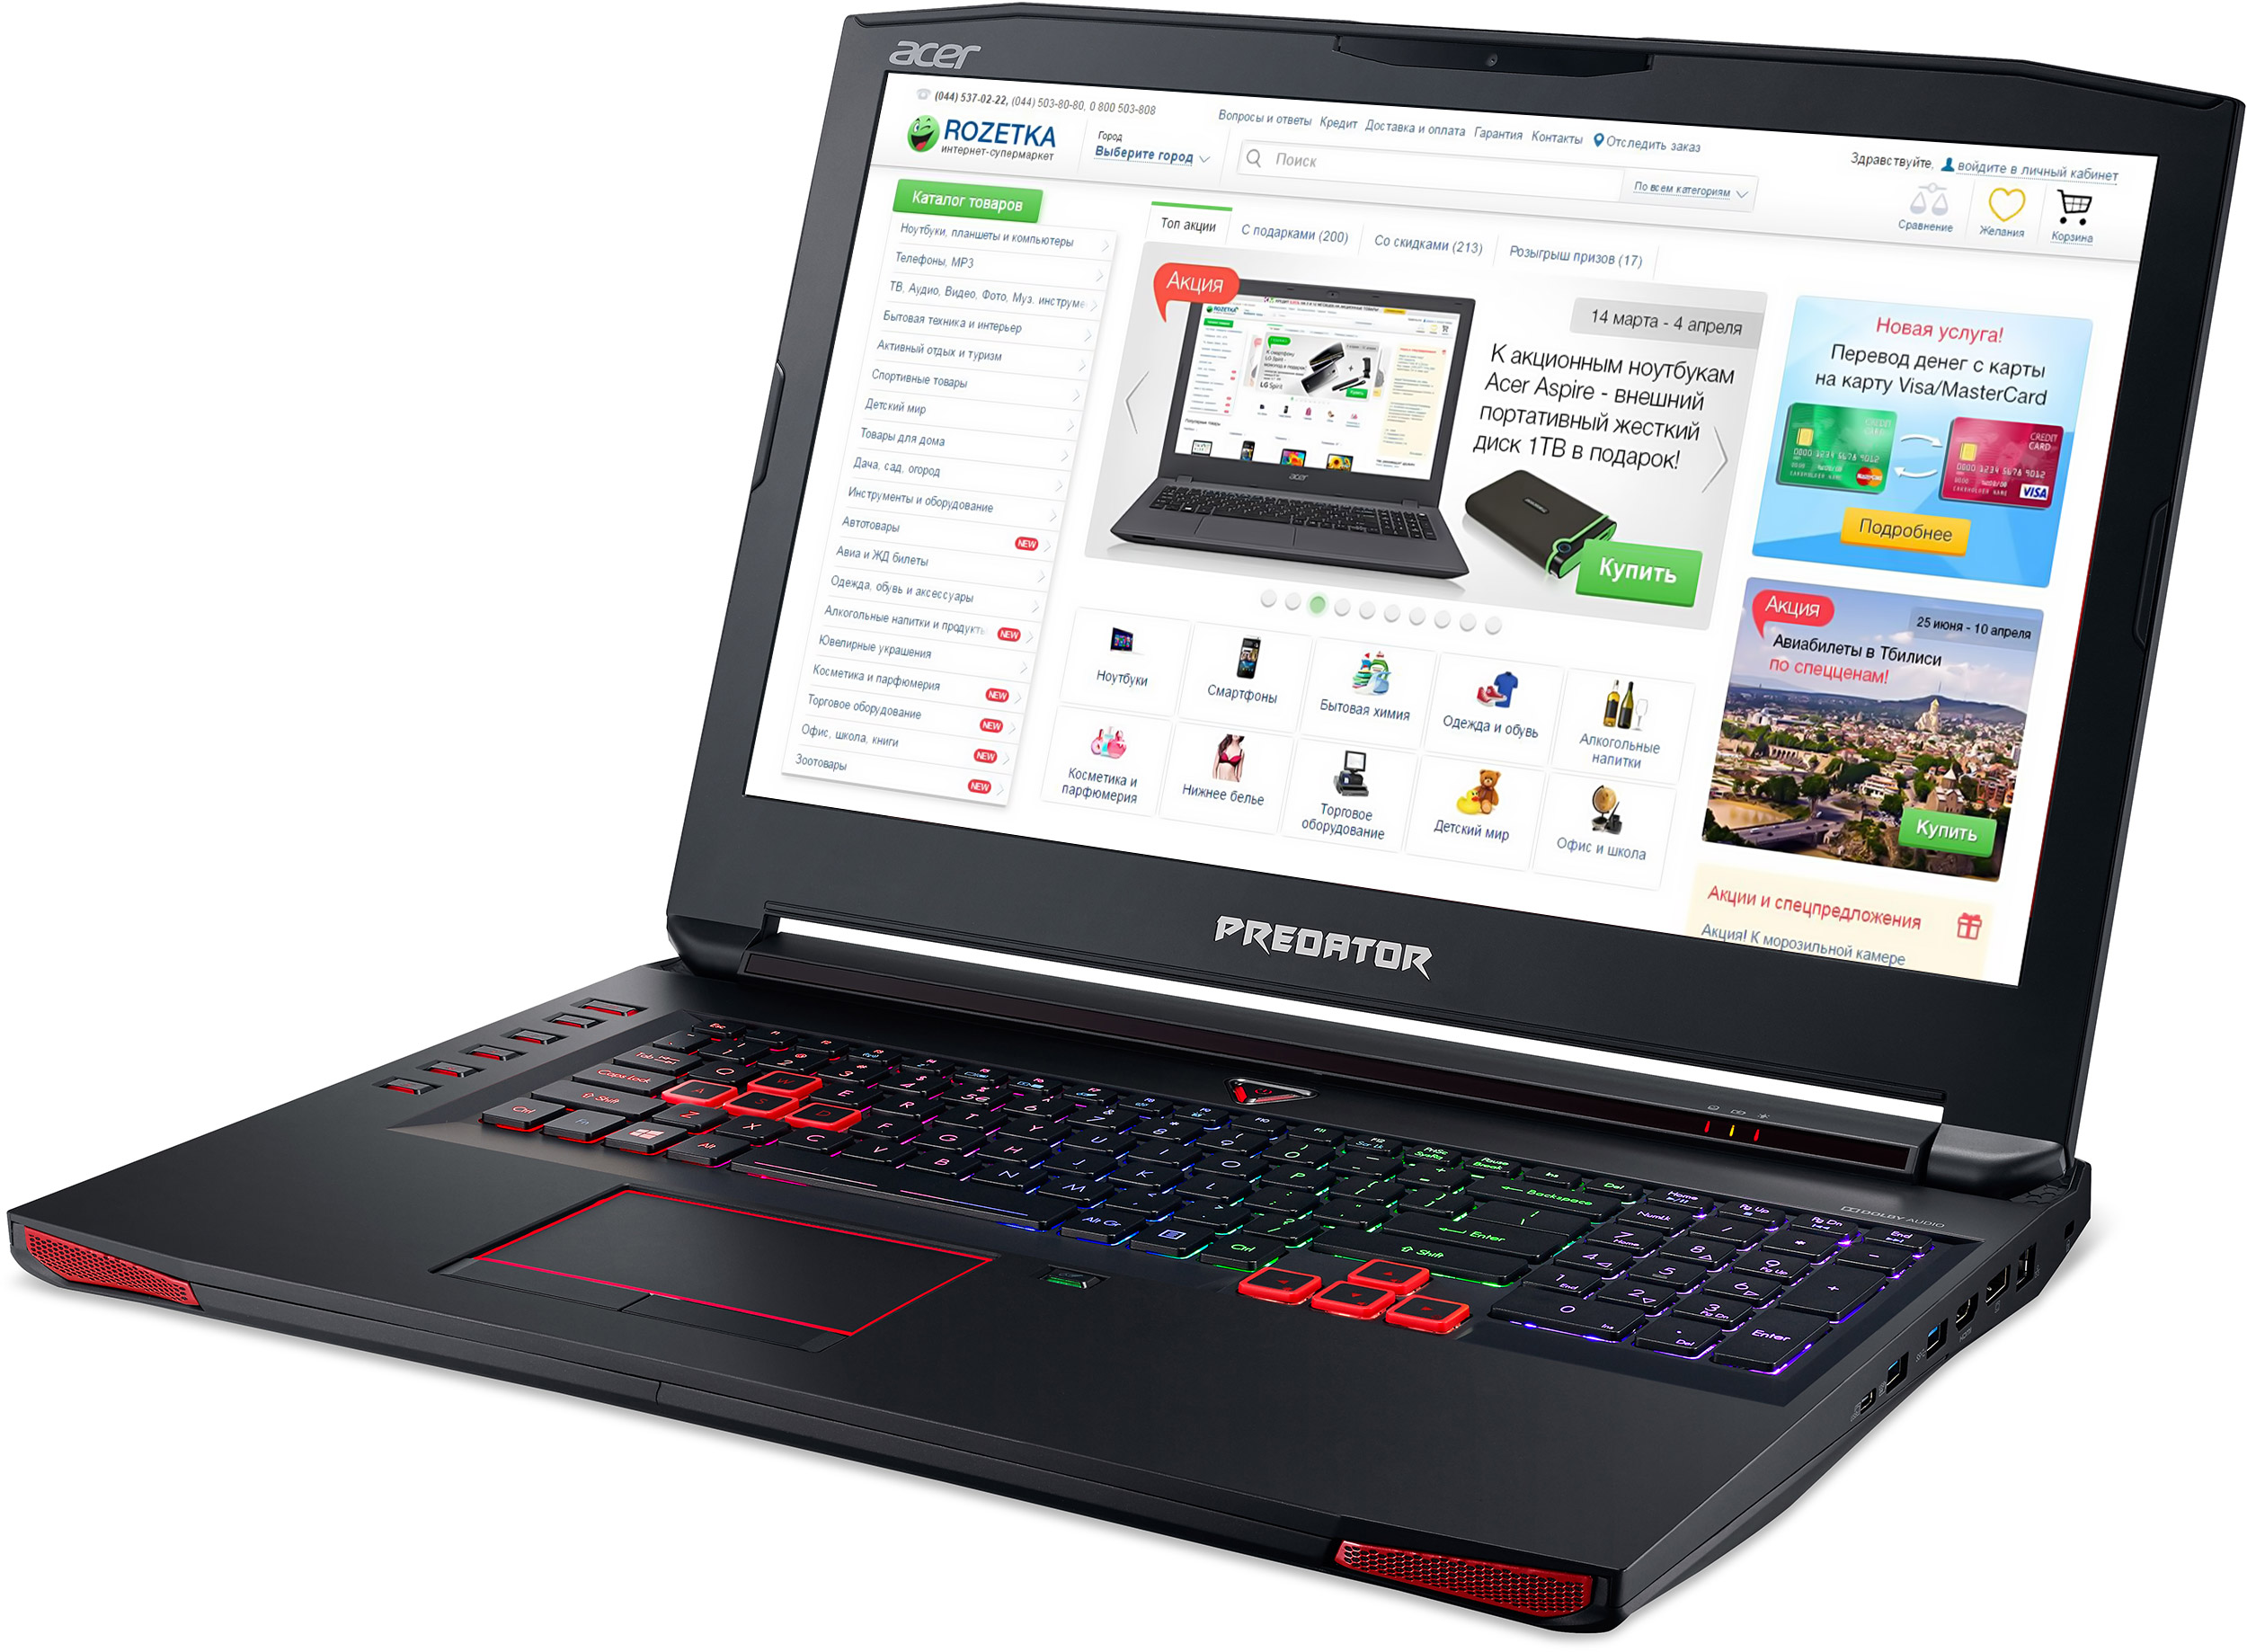 Купить ноутбук распродажа недорого. Ноутбук Acer Predator g9-791-70p7. Predator Designer Base ноутбук. Скидки на Ноутбуки. Ноутбук продается.